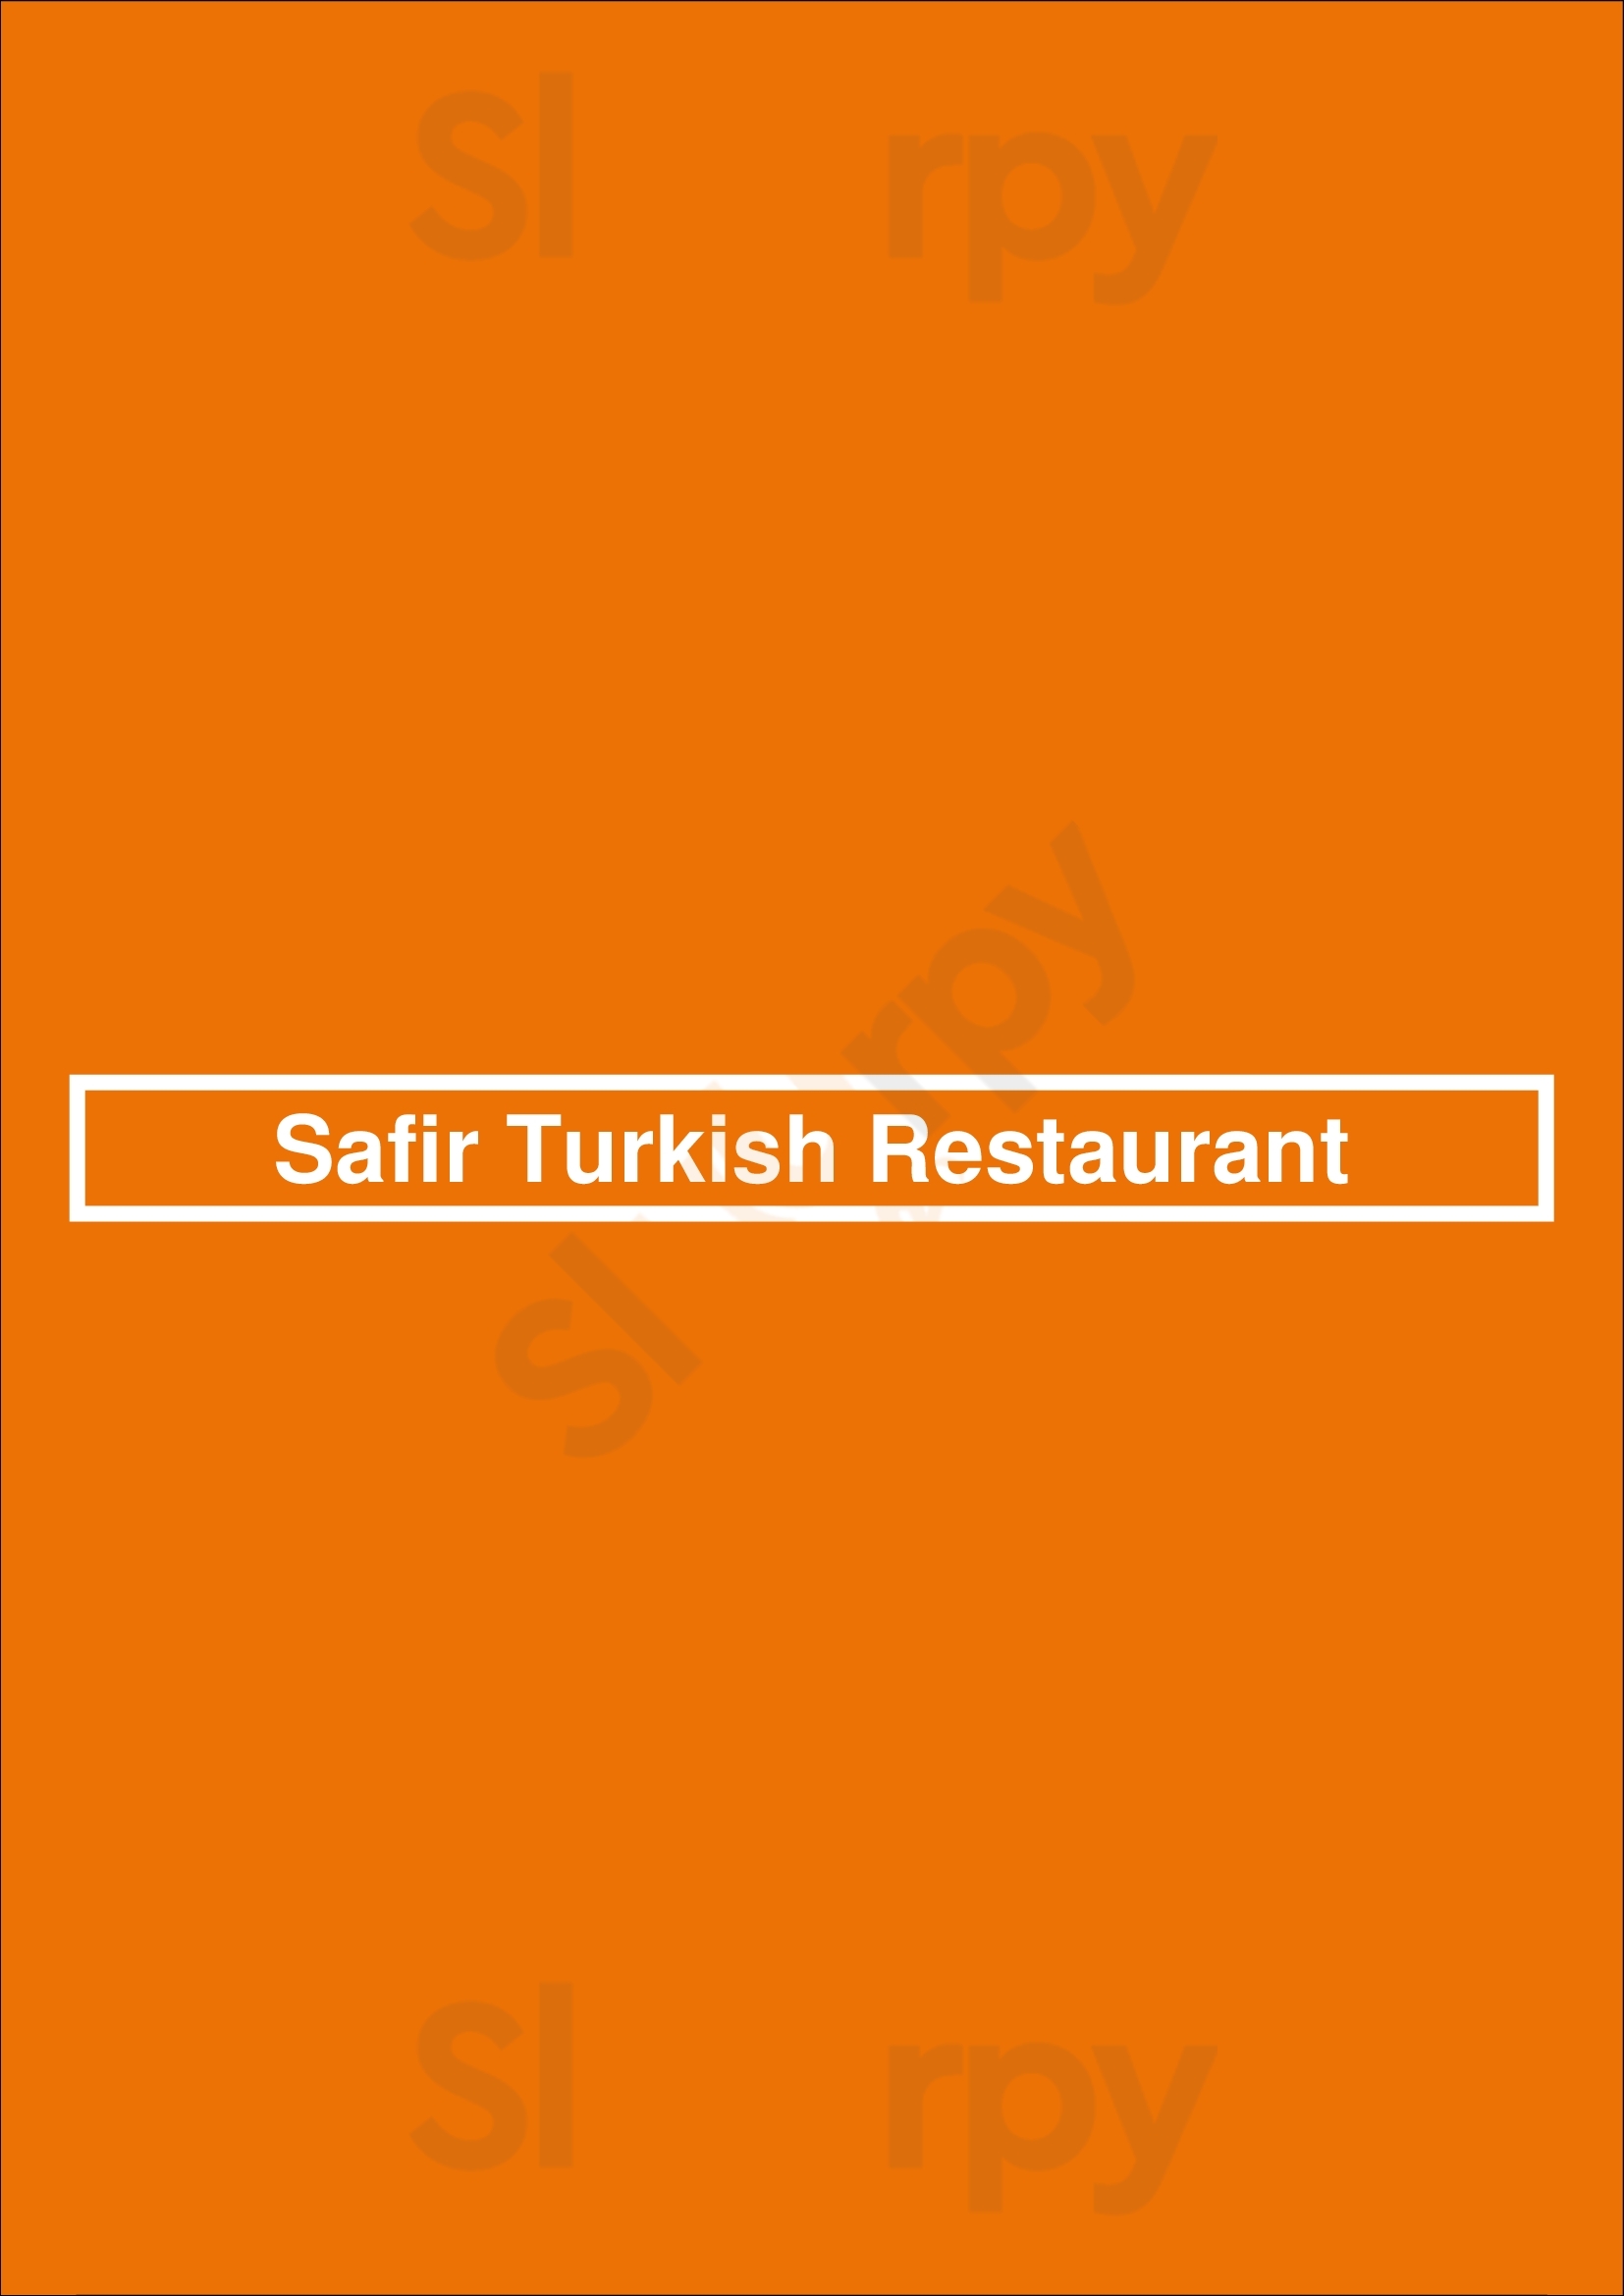 Safir Turkish Restaurant Edmonton Menu - 1